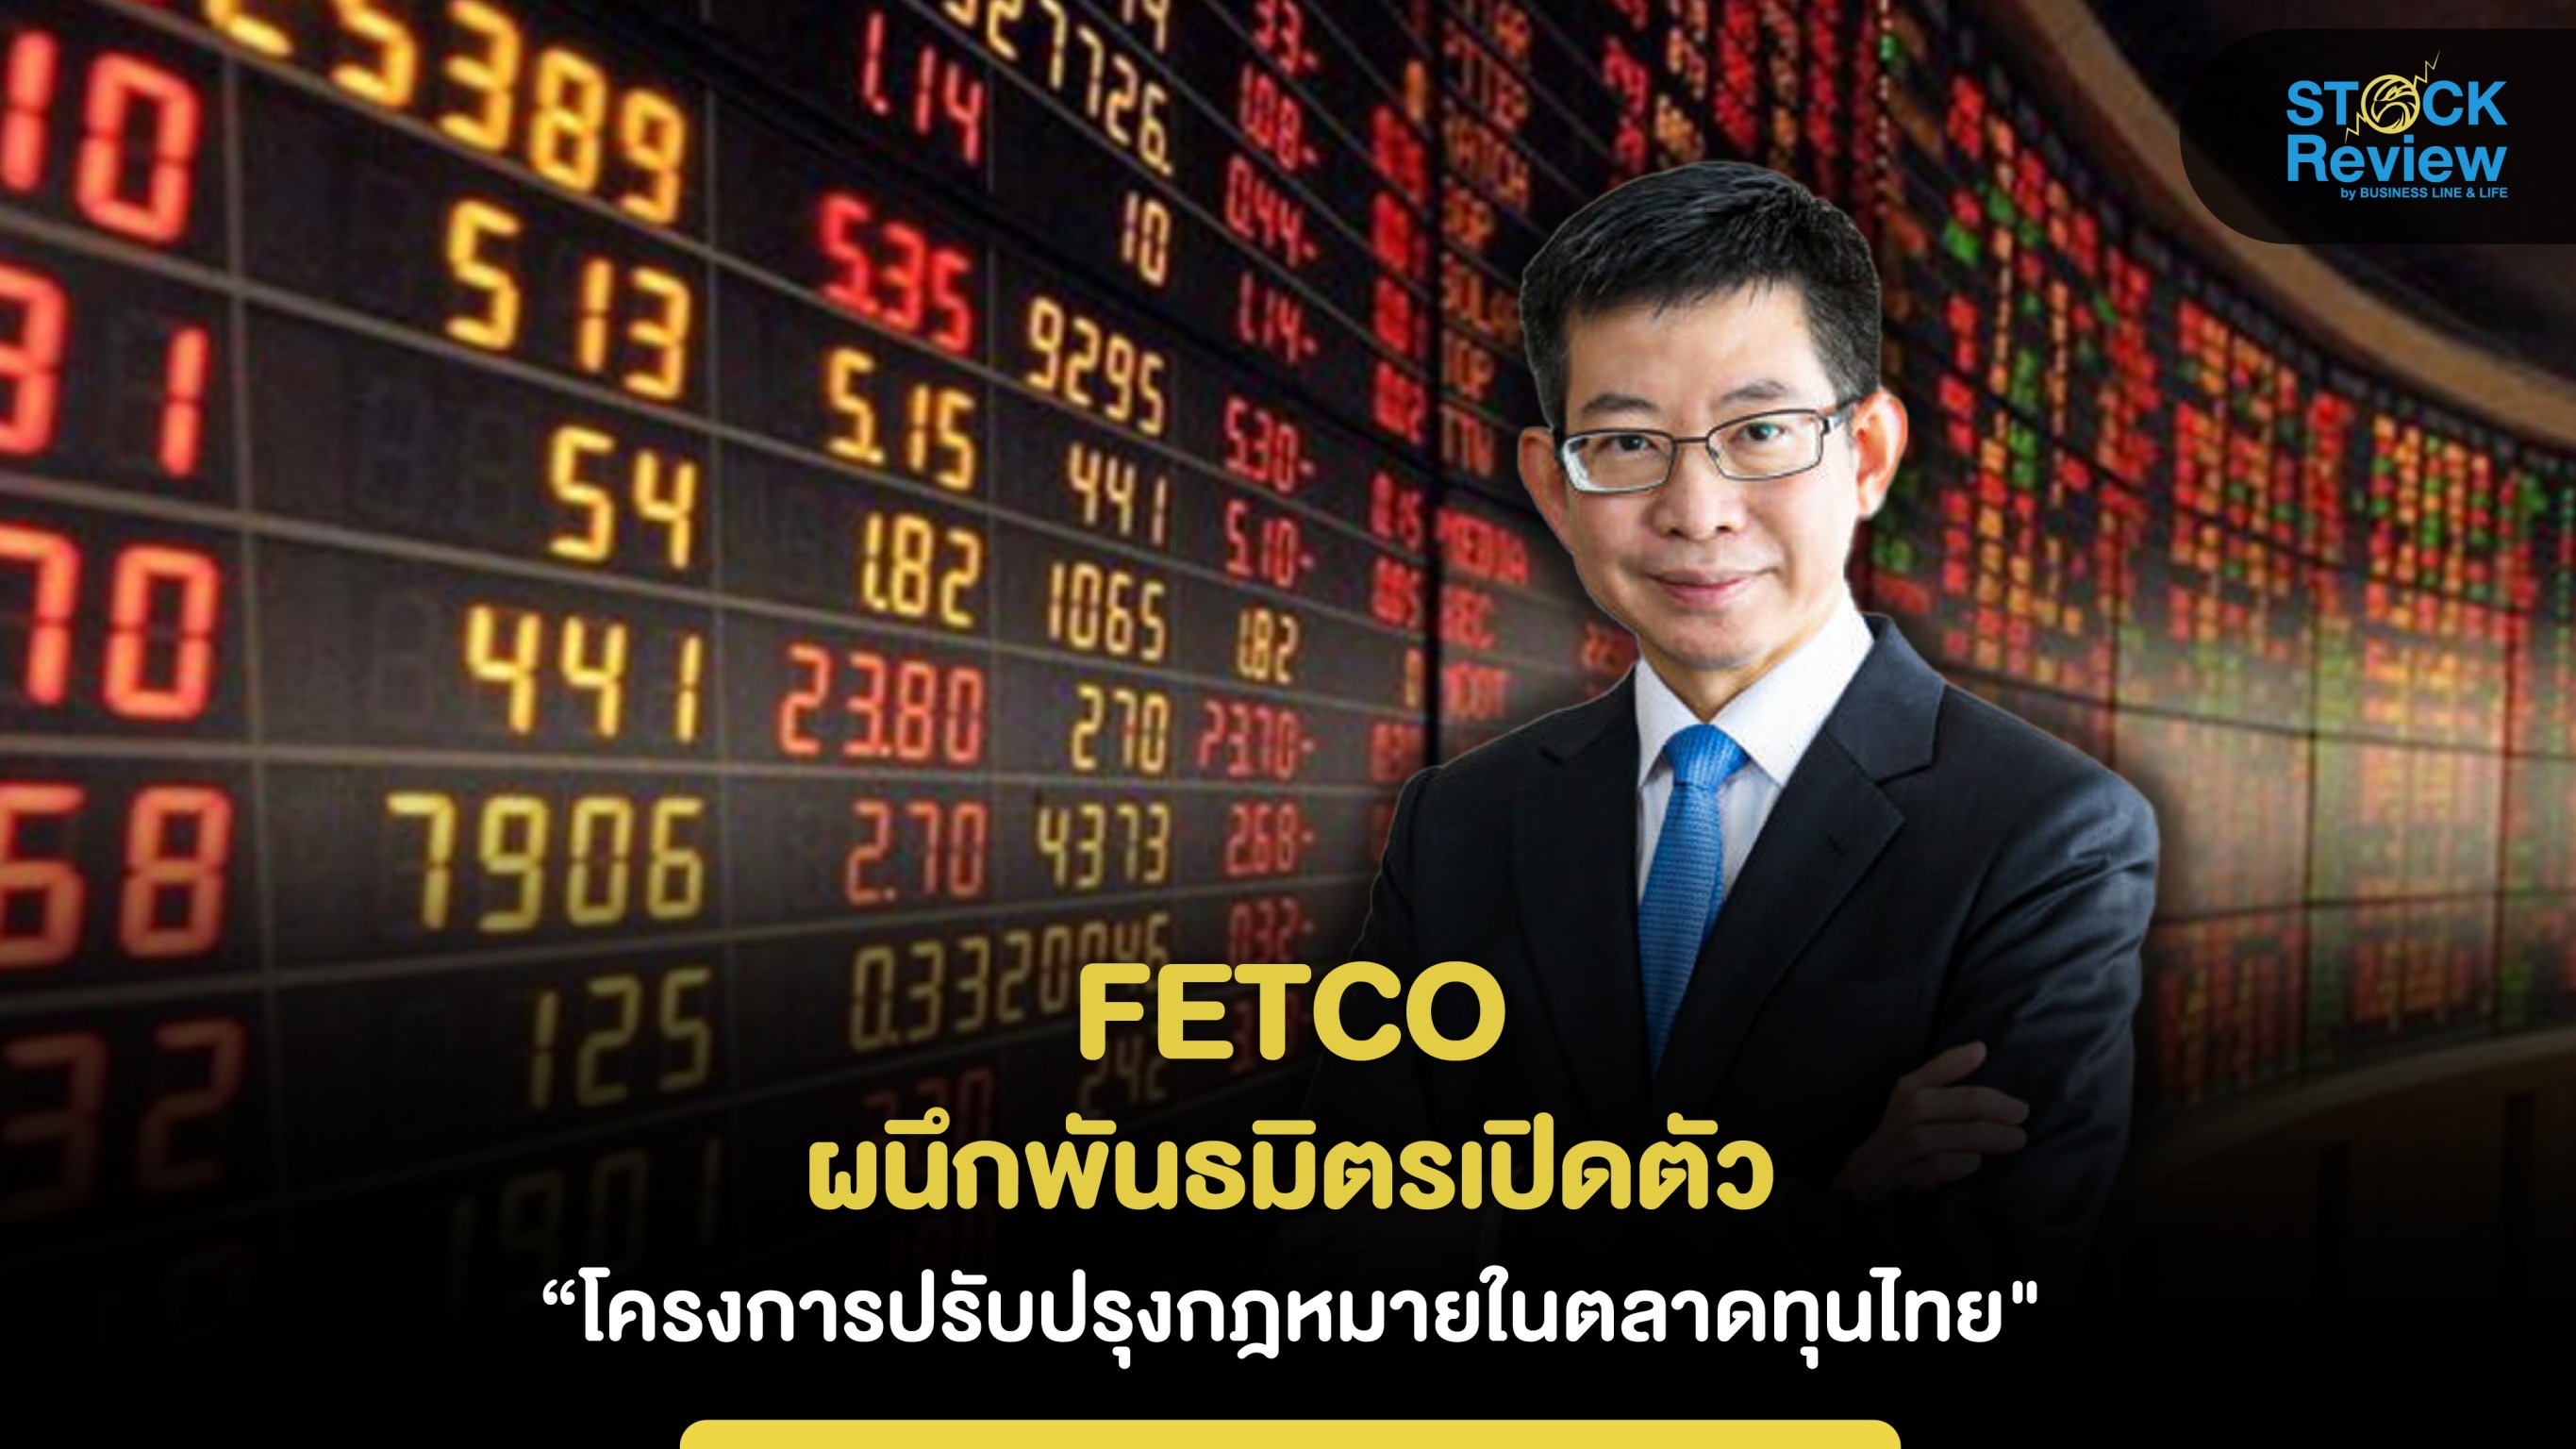 FETCO FETCO ผนึกพันธมิตรเปิดตัว “โครงการปรับปรุงกฎหมายที่เป็นอุปสรรคต่อการดำเนินธุรกิจในตลาดทุนไทย